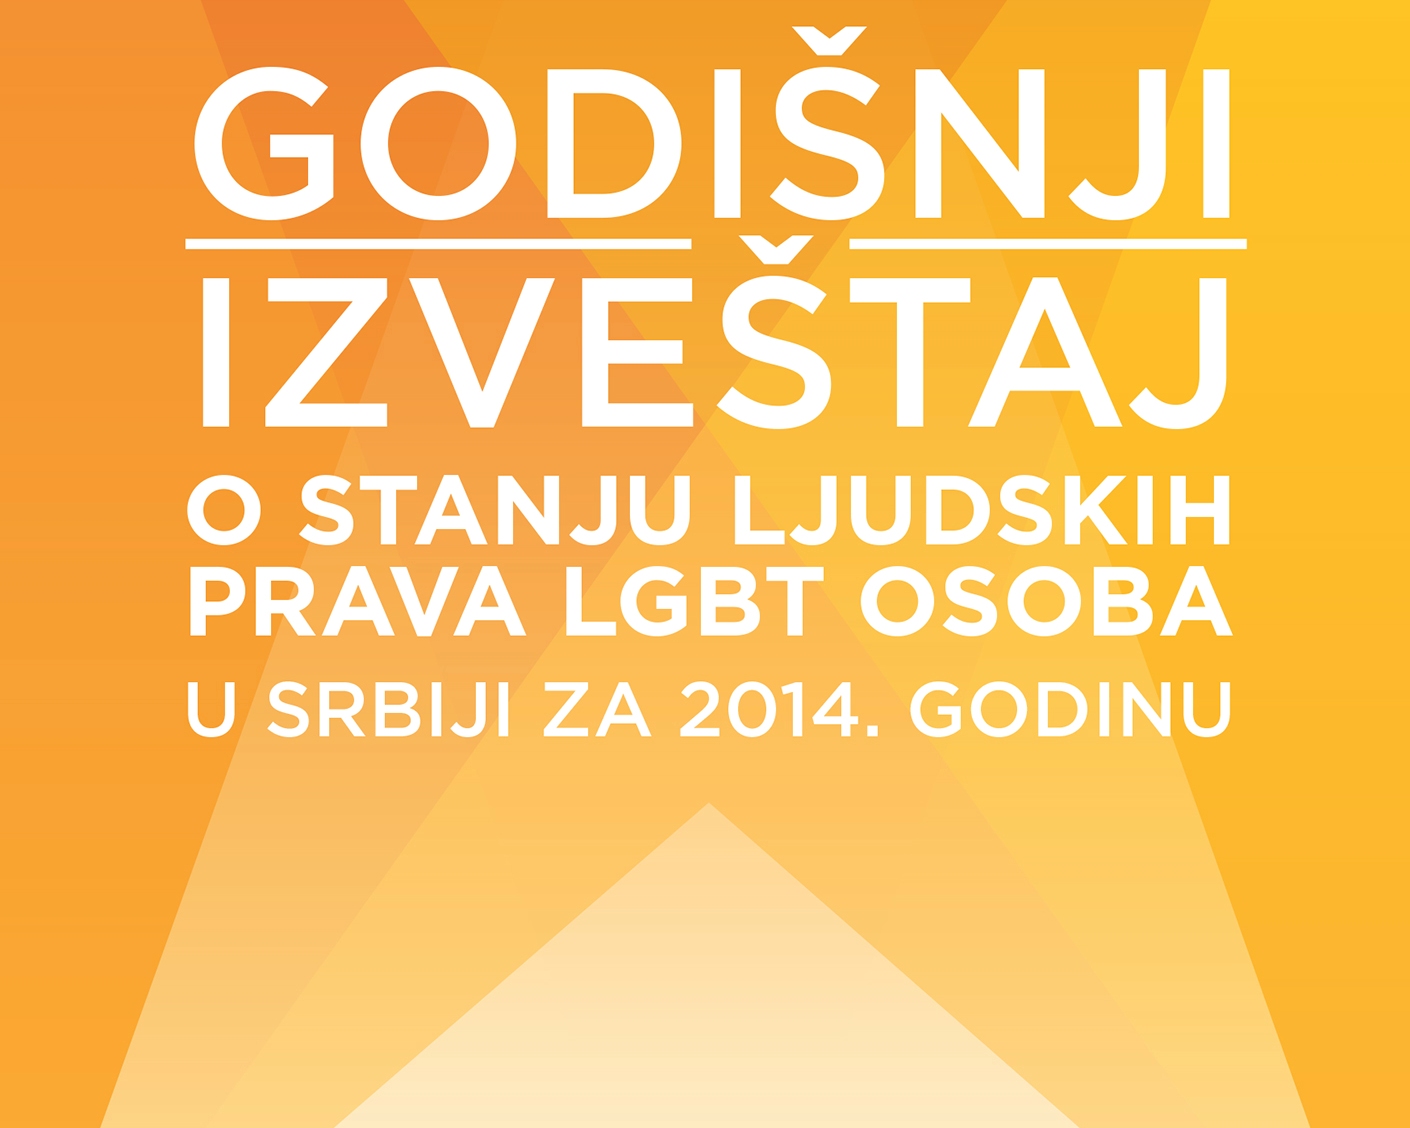 Godišnji izveštaj o stanju ljudskih prava LGBT osoba u Srbiji za 2014. godinu